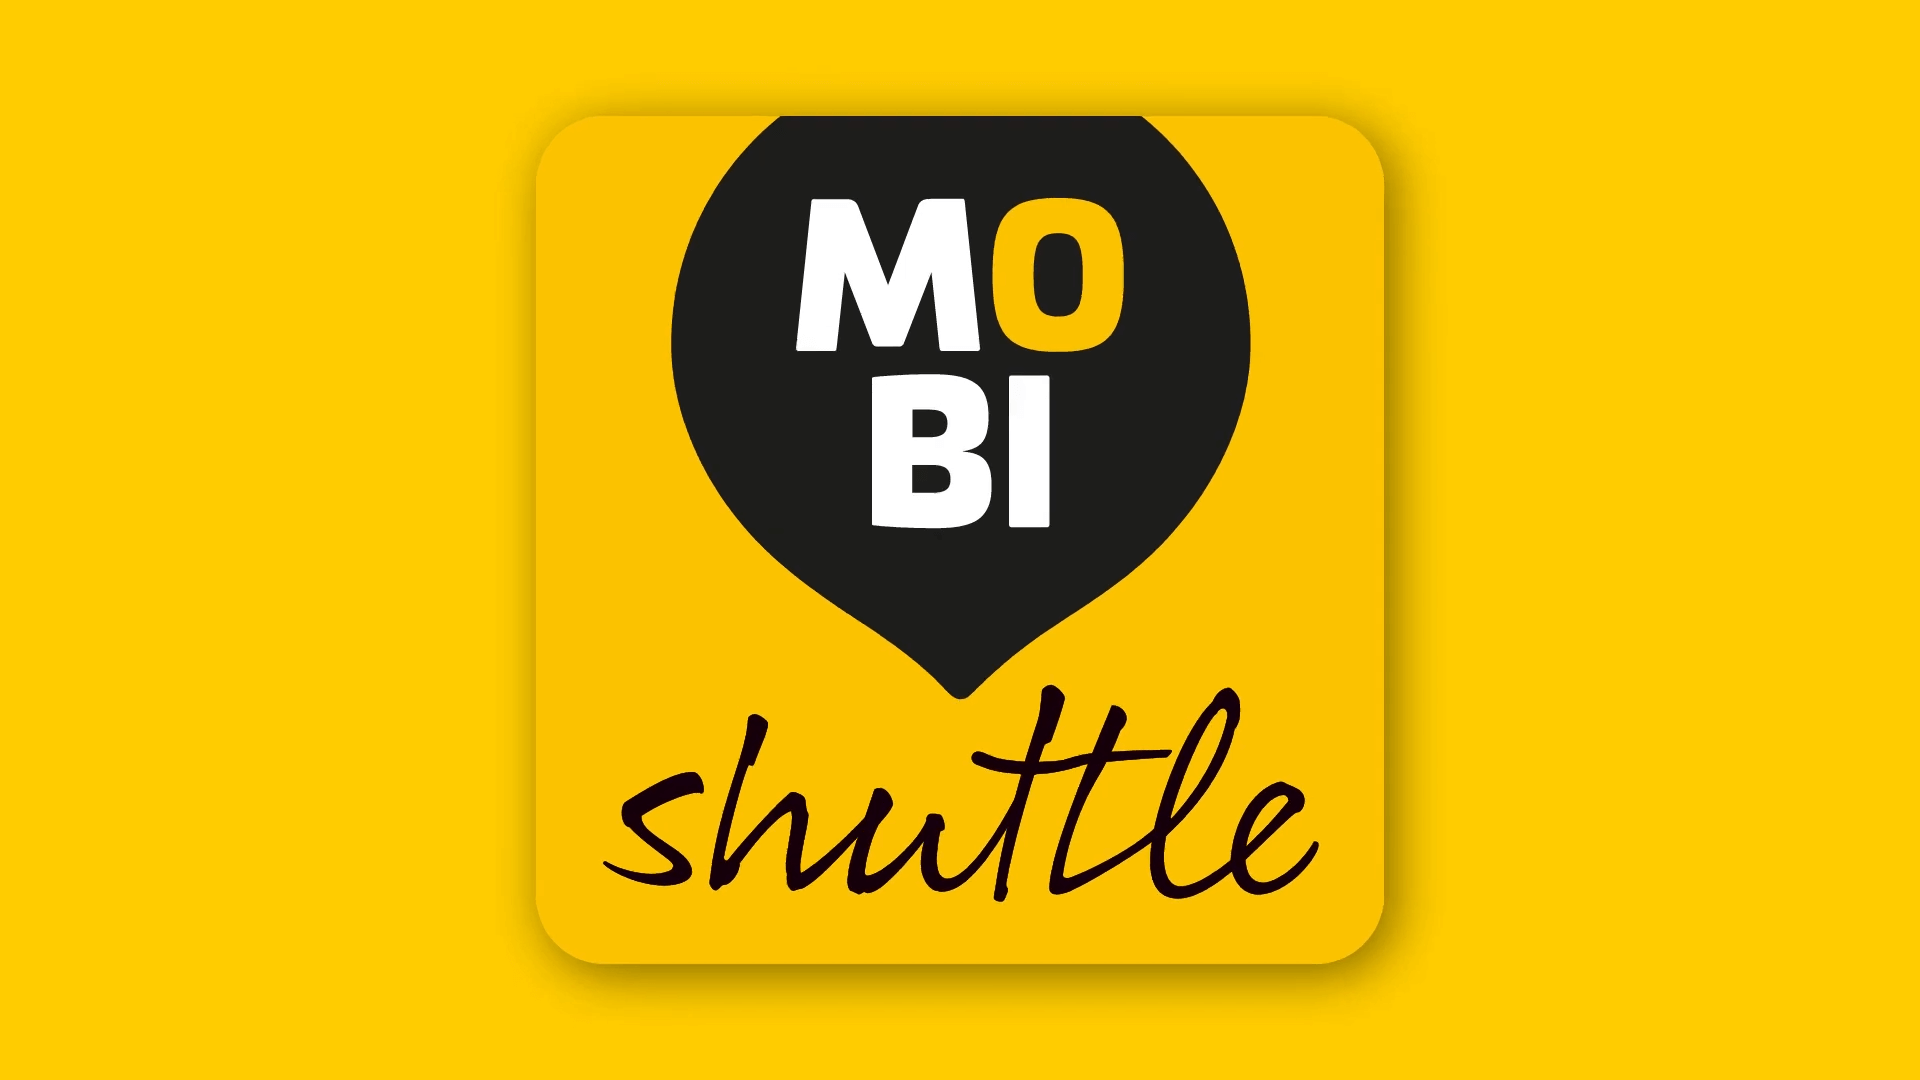 mobishuttle ─ der neue on demand service der dvb